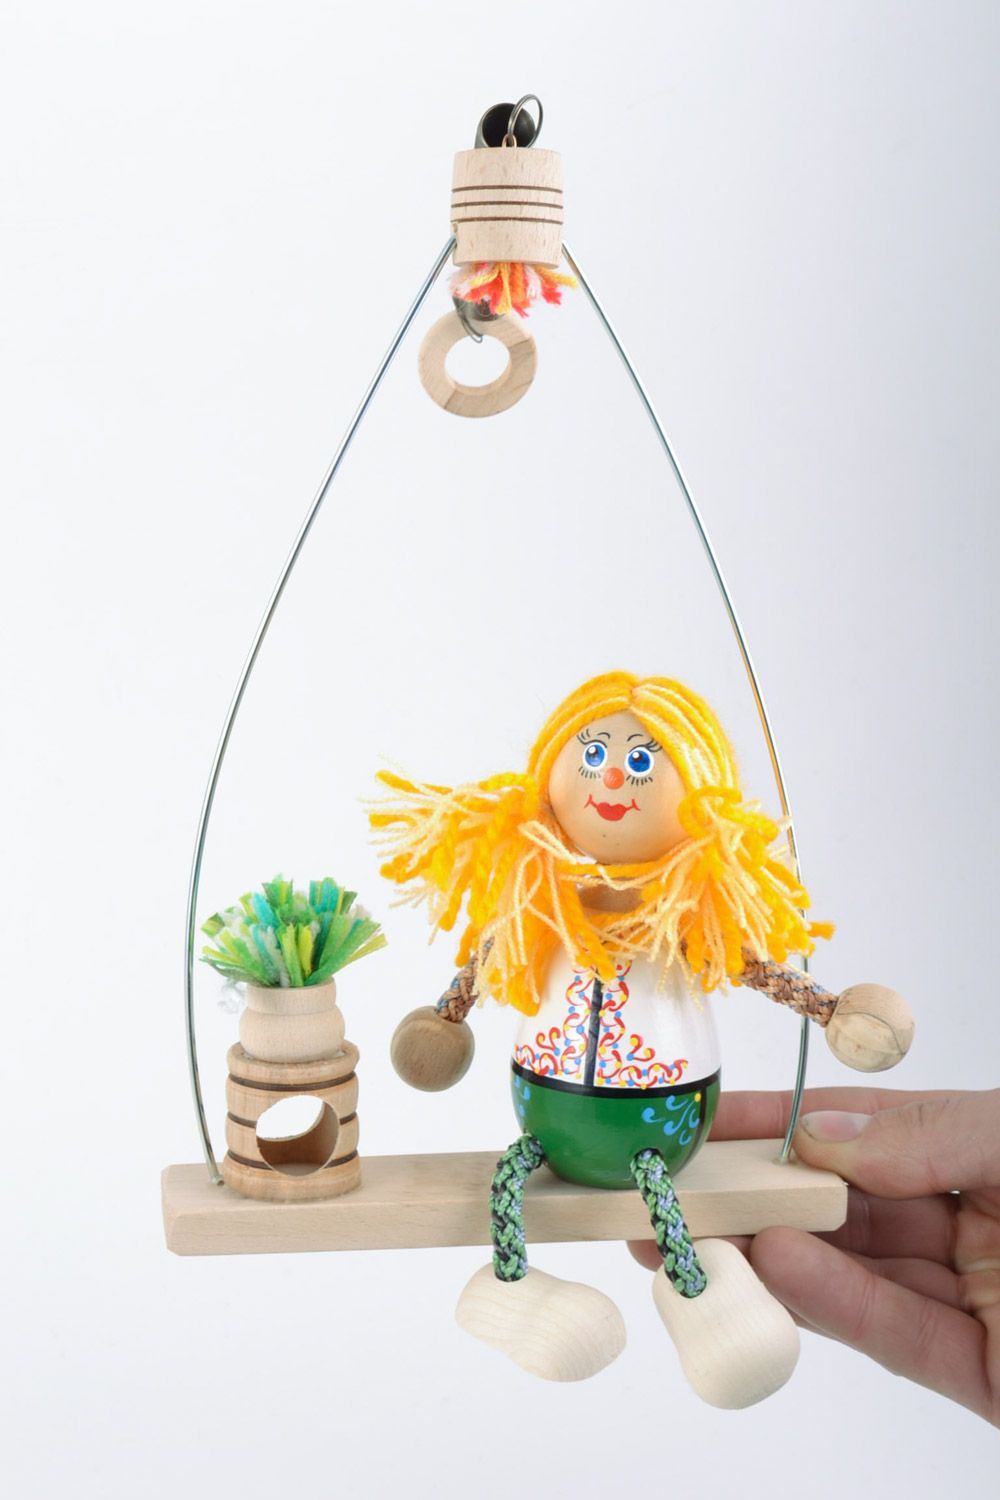 Игрушка из дерева на пружинке ручной работы в виде клоуна экологически чистая фото 1